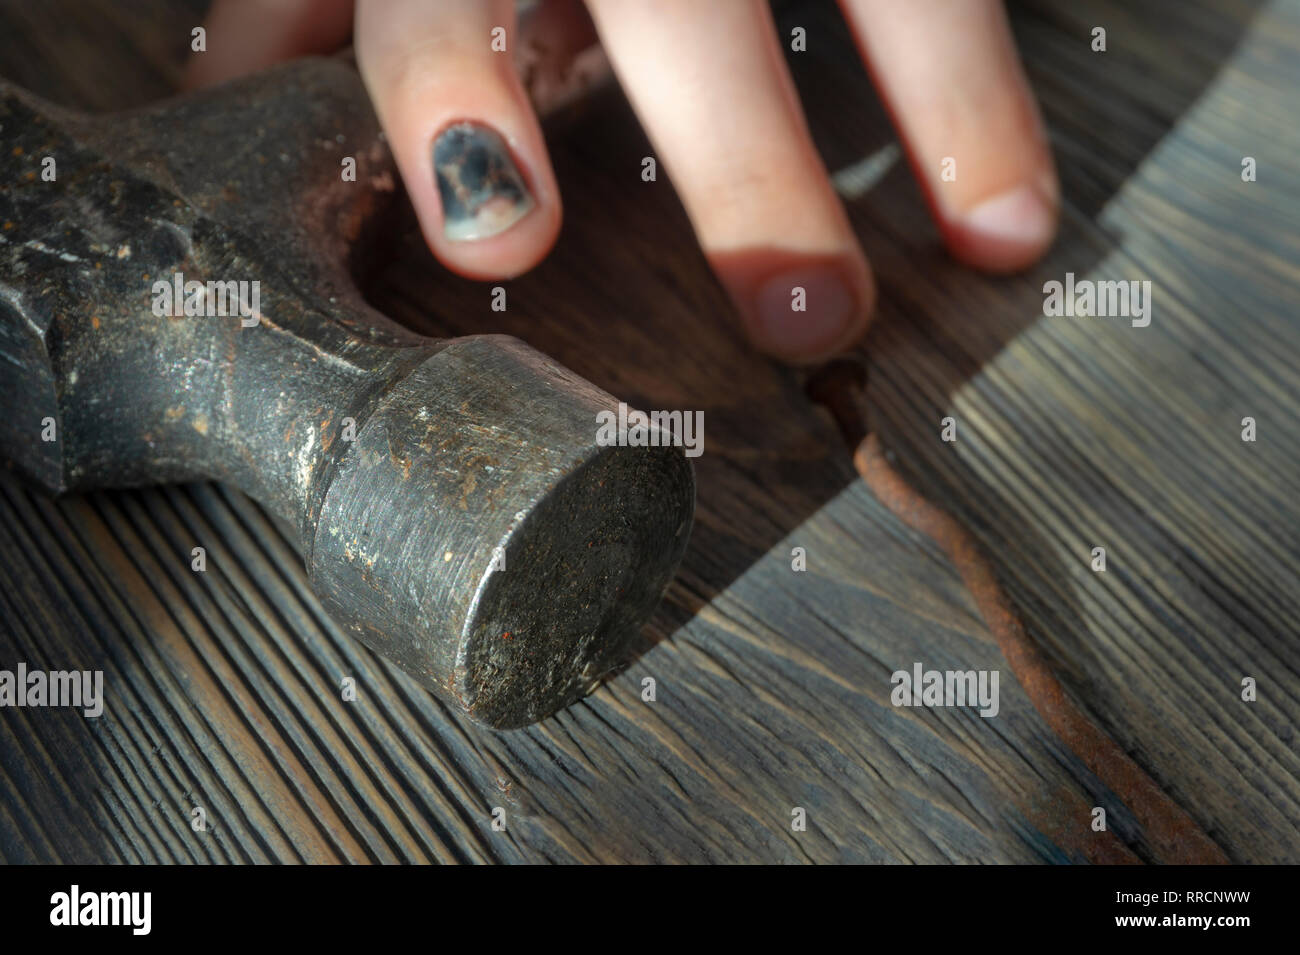 Verletzte hand mit Geschwärzter und gequetschten Thumbnail vom Heftig schlagen Sie über einen Hammer in der Nähe zu sehen, in einem konzeptionellen Bild der DIY-Verletzungen Stockfoto